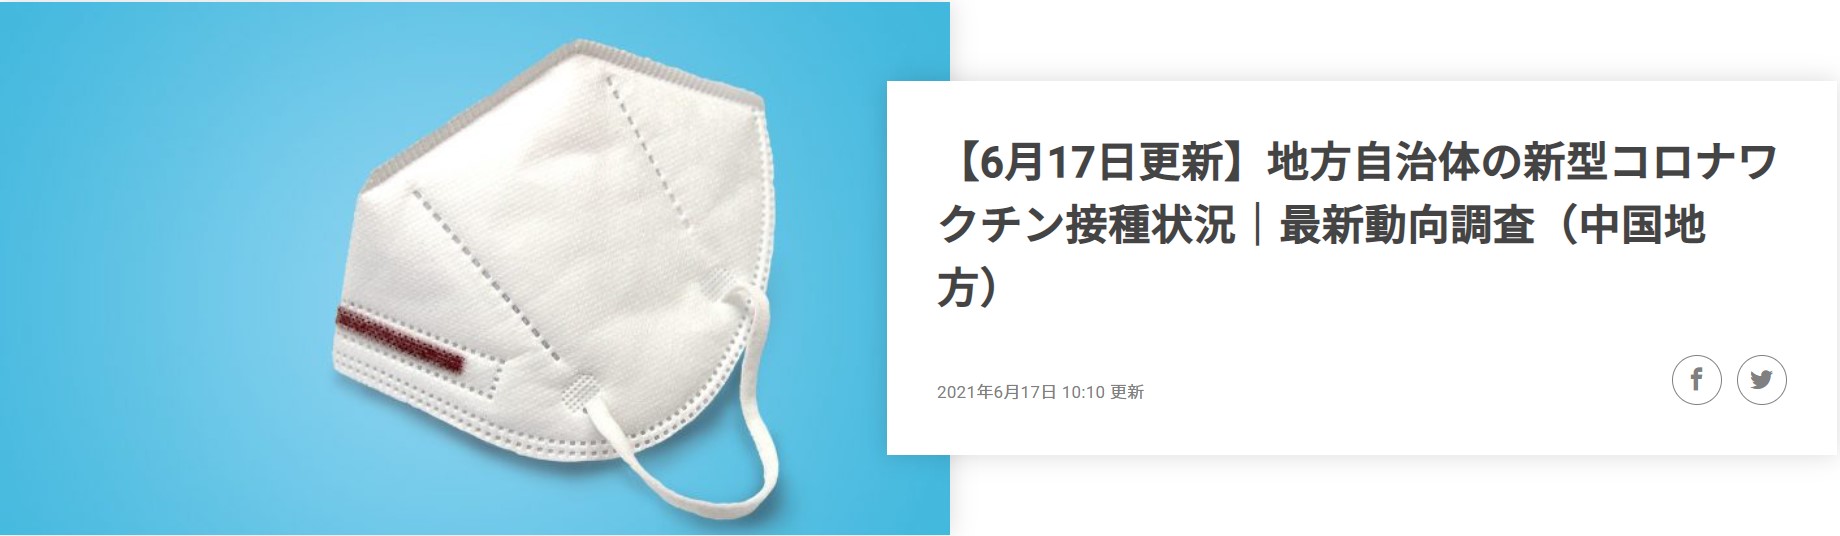 21年6月17日発表 鳥取県の新型コロナワクチンの接種状況 最新動向レポートを公開 株式会社コントロールテクノロジーのプレスリリース